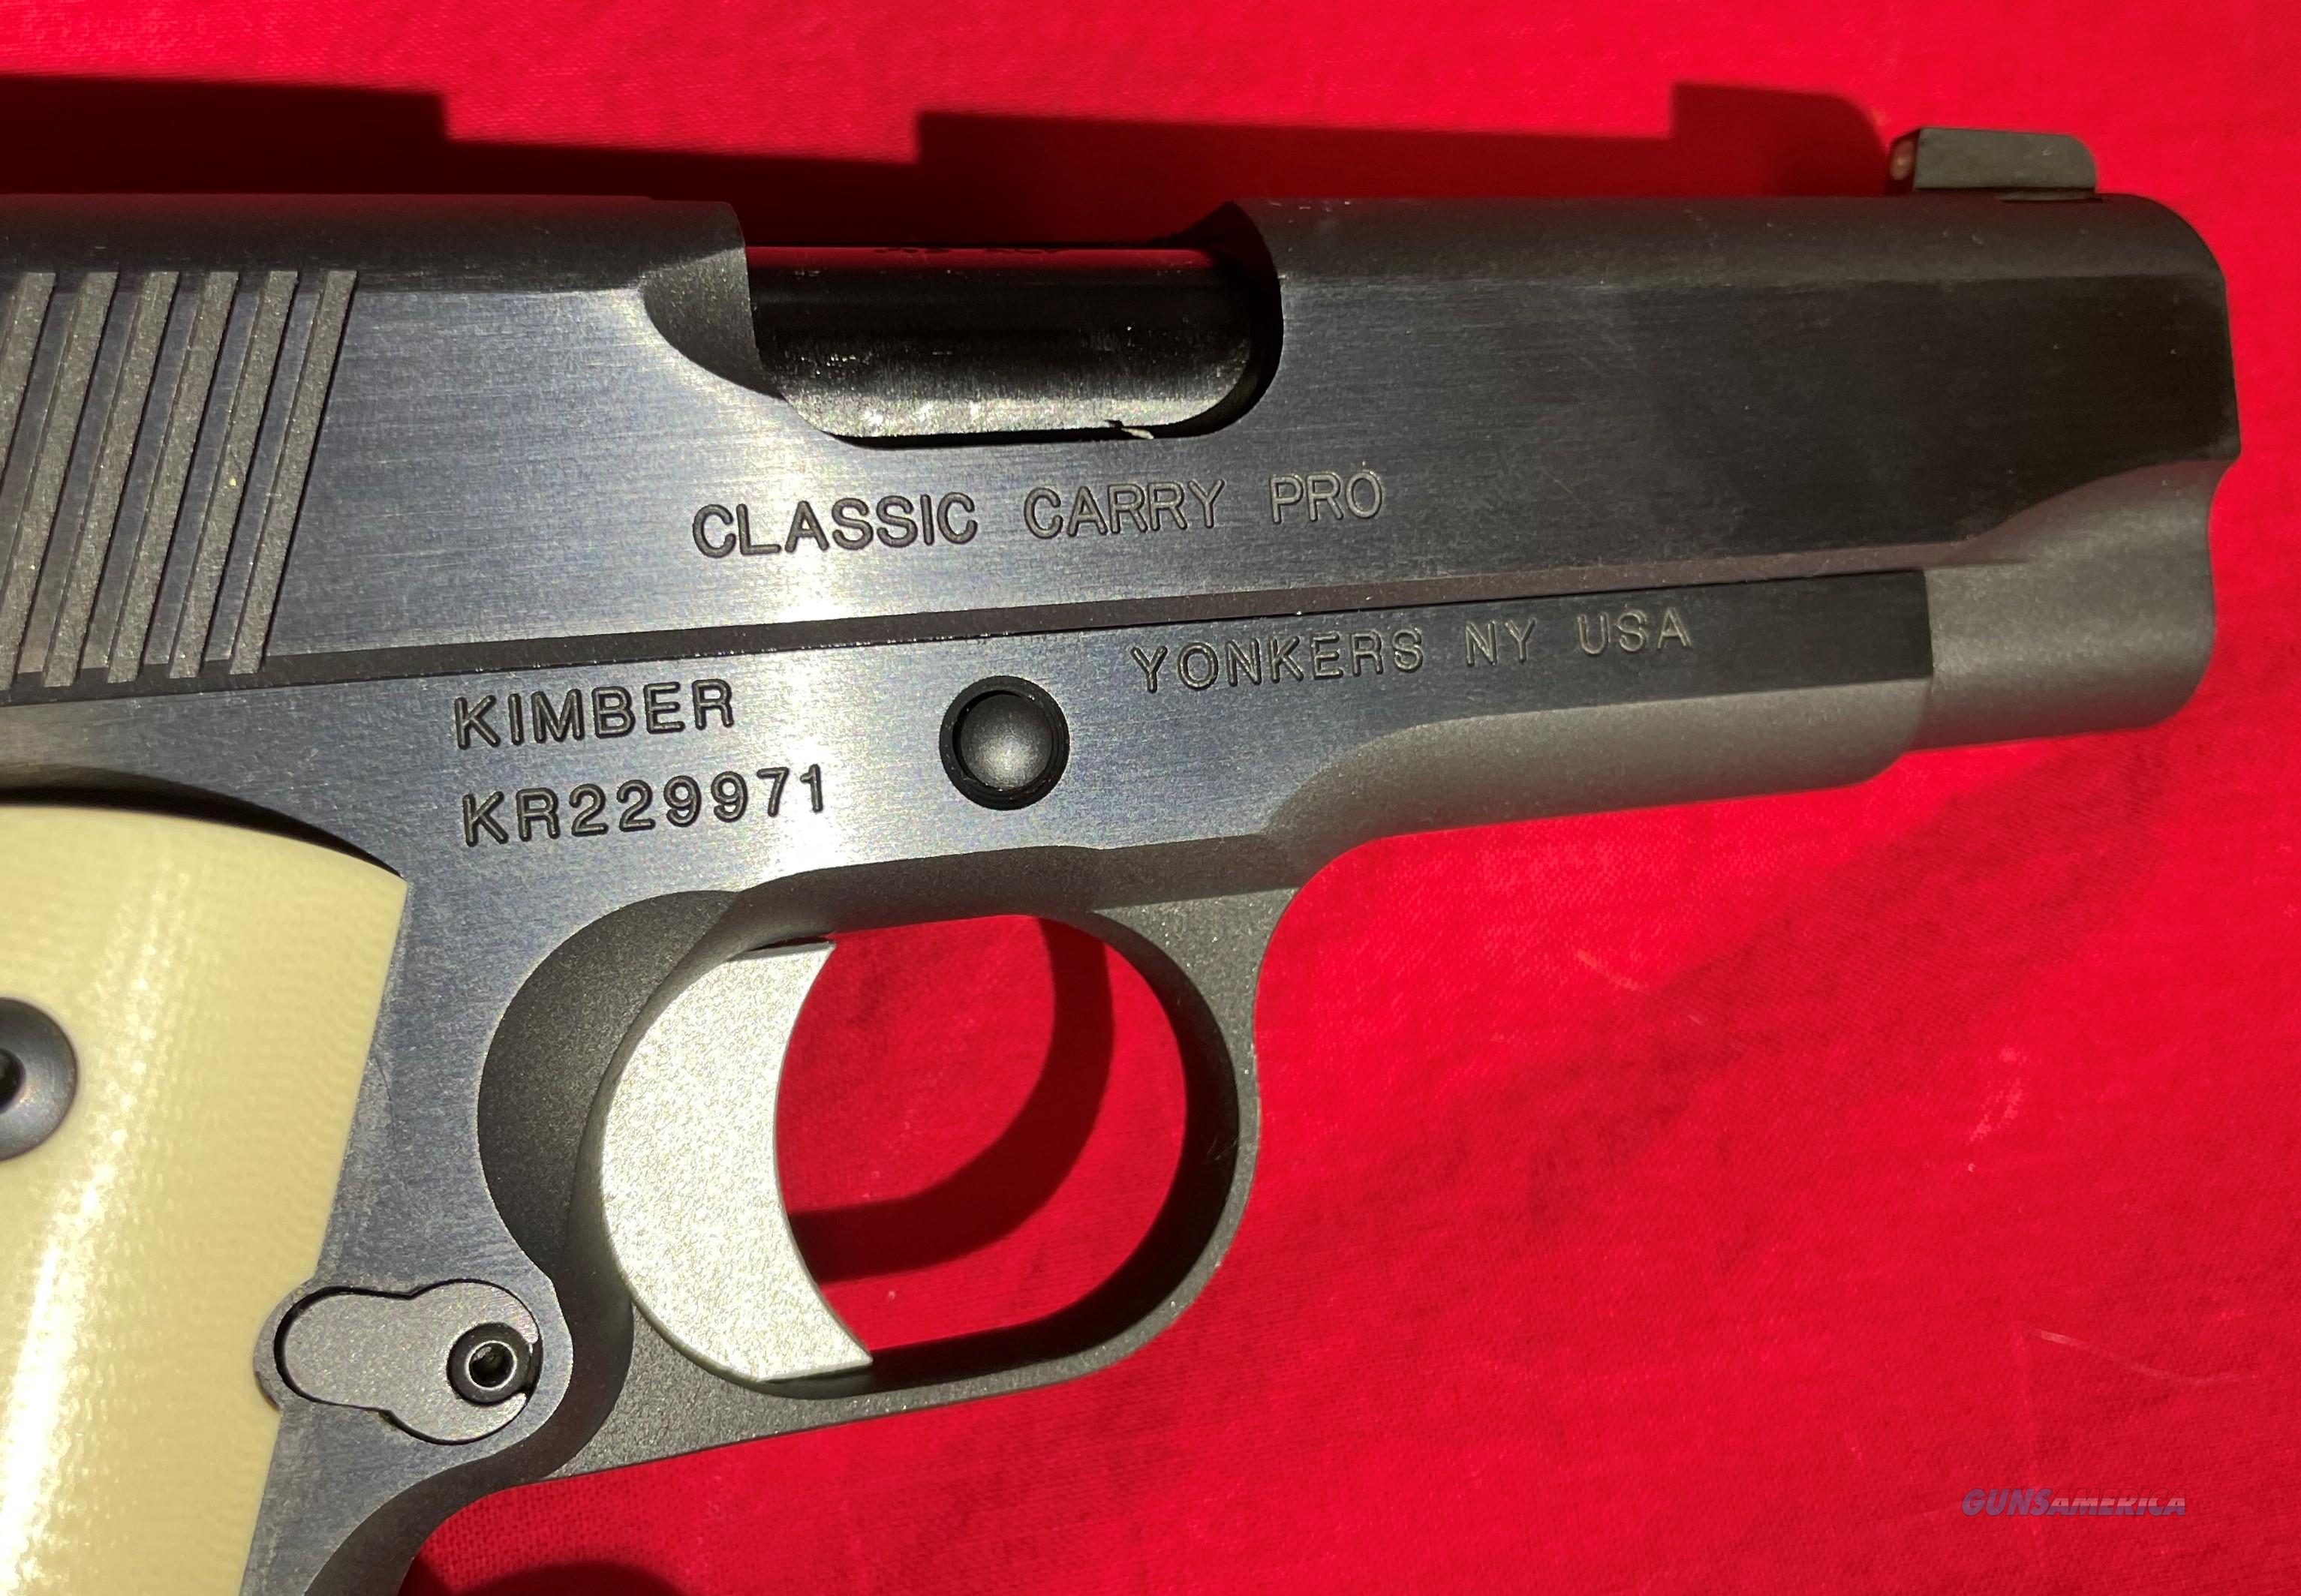 Kimber Classic Carry Pro Acp For Sale At Gunsamerica Com